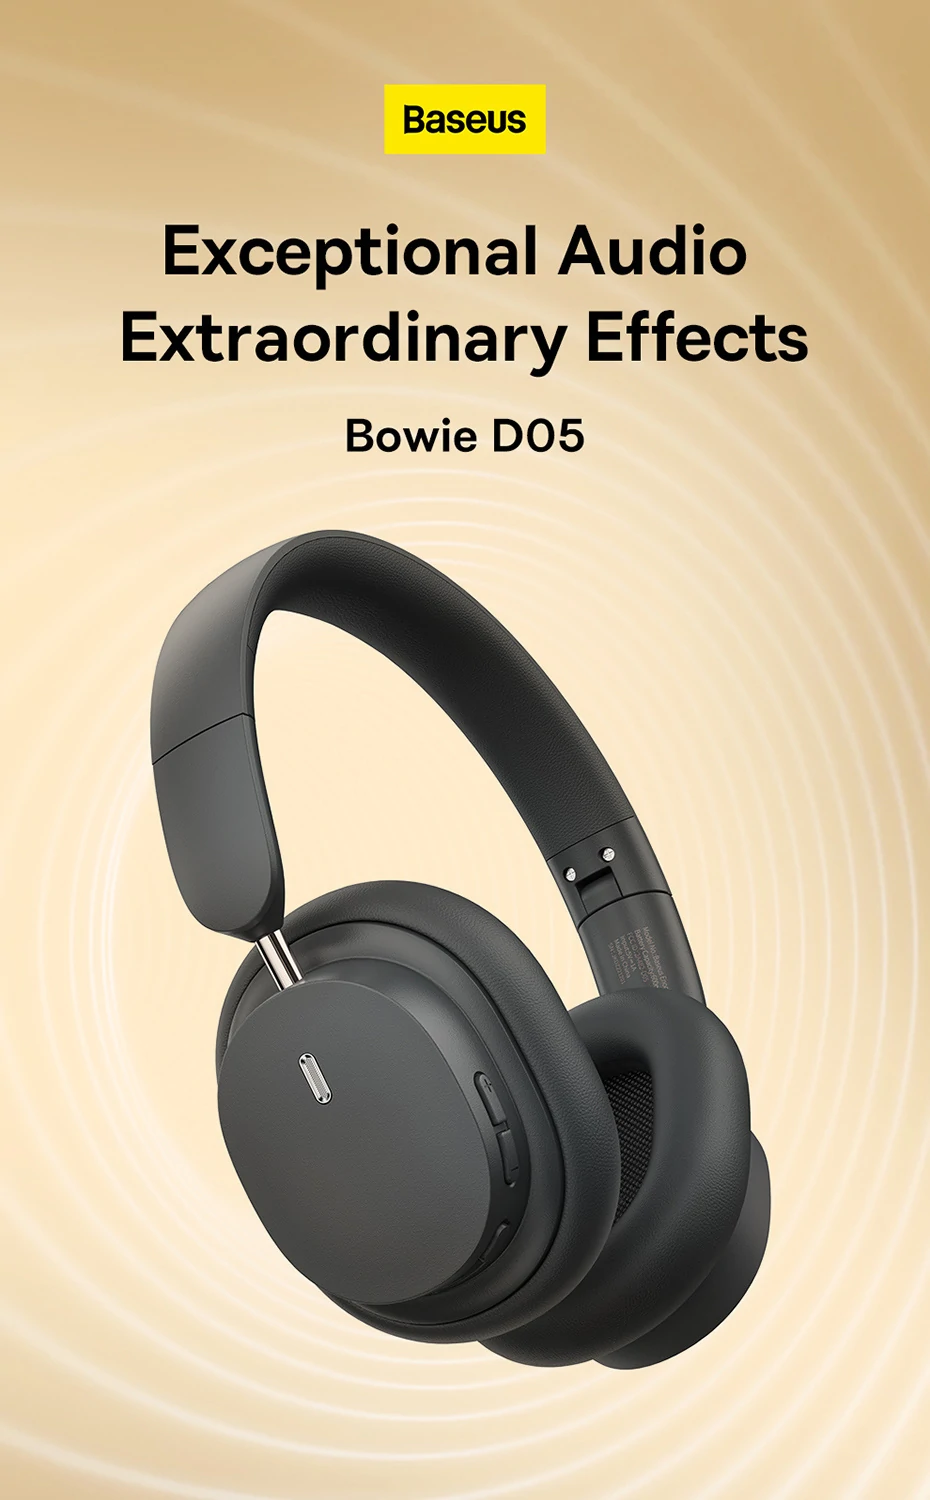 Bluetooth sluchátka Baseus Bowie D05 se speciální 3D schopností